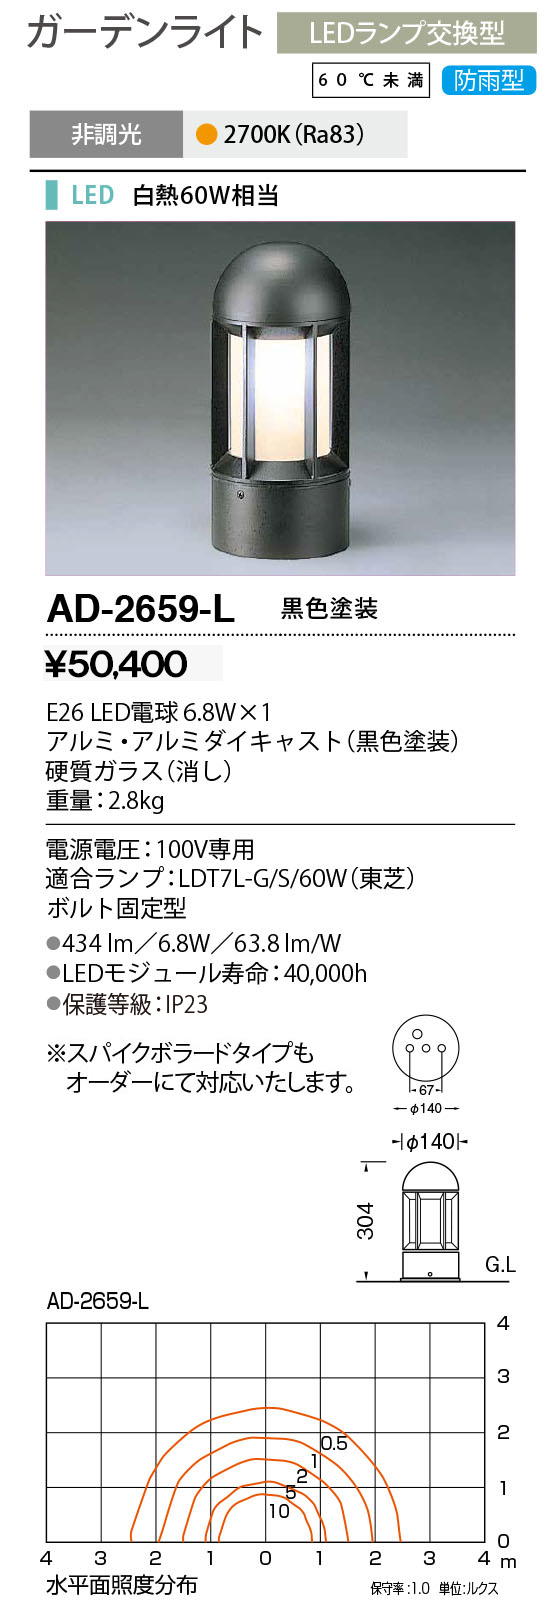 山田照明 山田照明(YAMADA) AD-2606-L ガーデンライト LEDランプ交換型 非調光 電球色 防雨型 ダークシルバー [♪] 